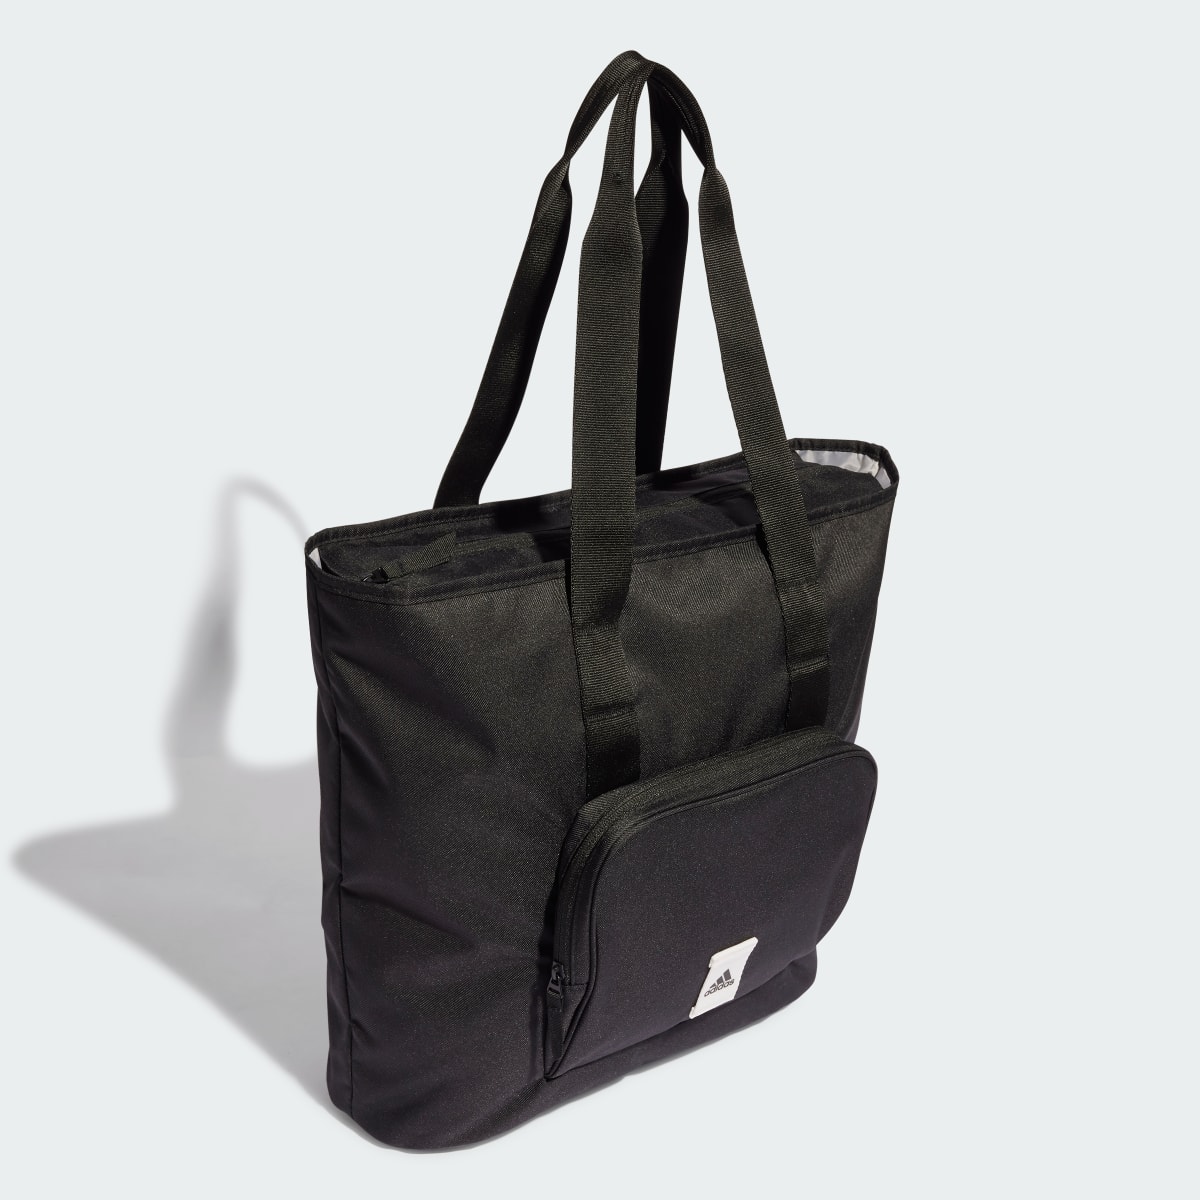 Adidas Prime Tote Bag. 4